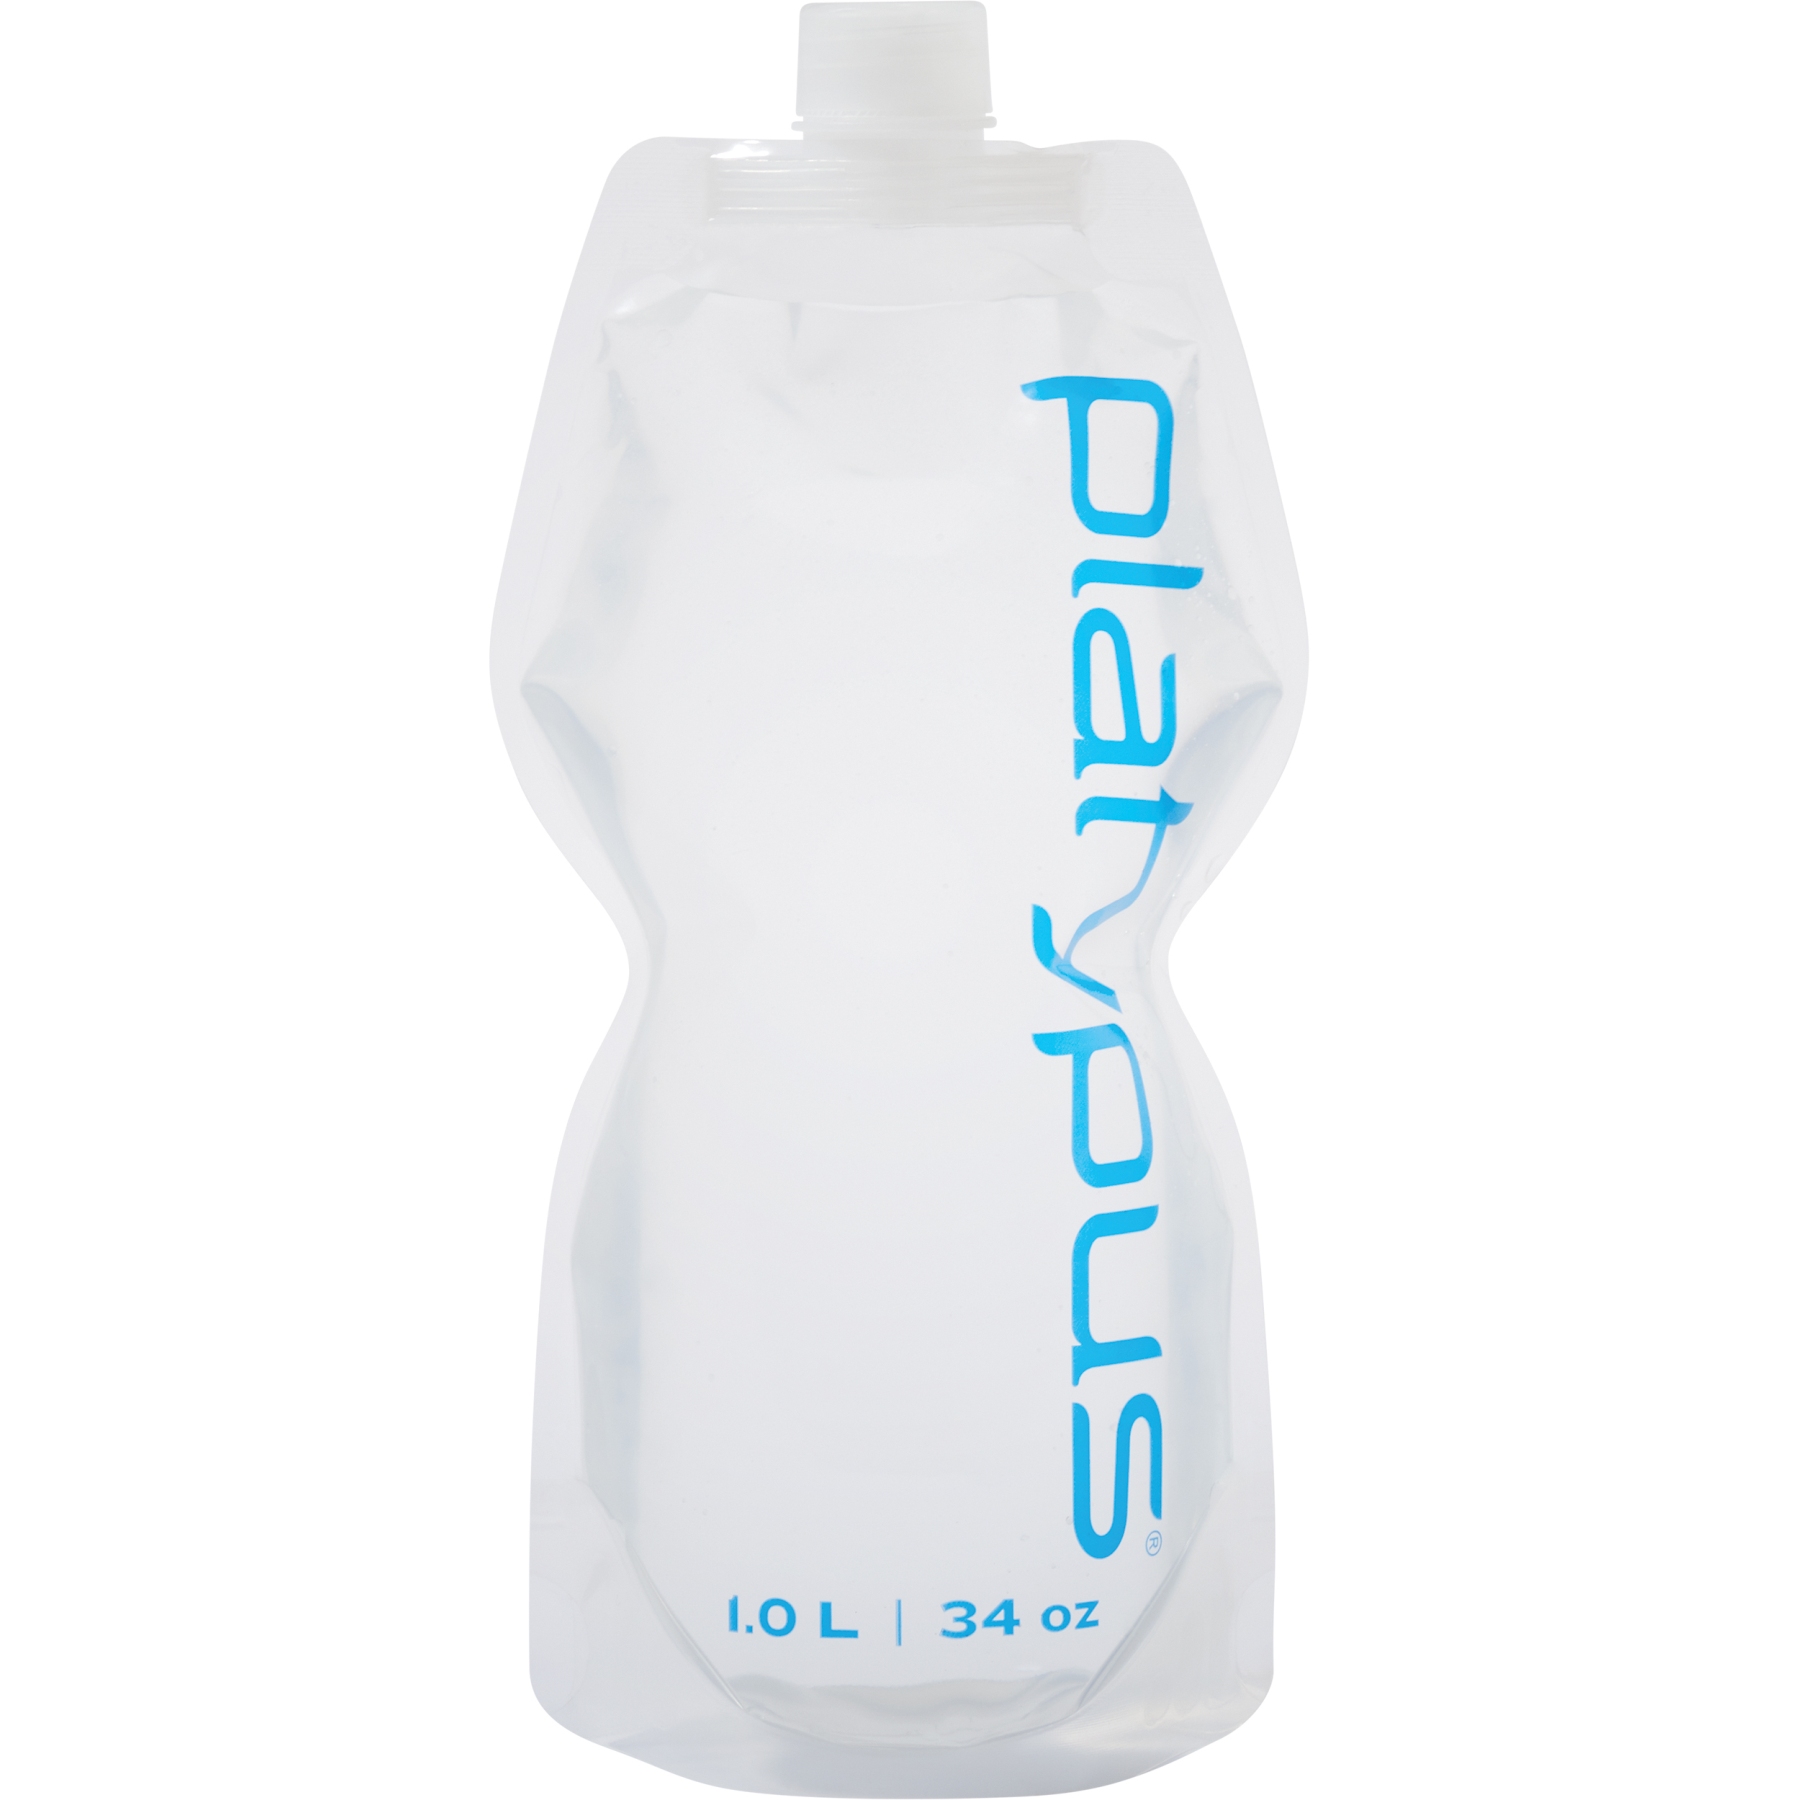 Produktbild von Platypus SoftBottle 1L Flexible Trinkflasche mit Closure Cap - Logo